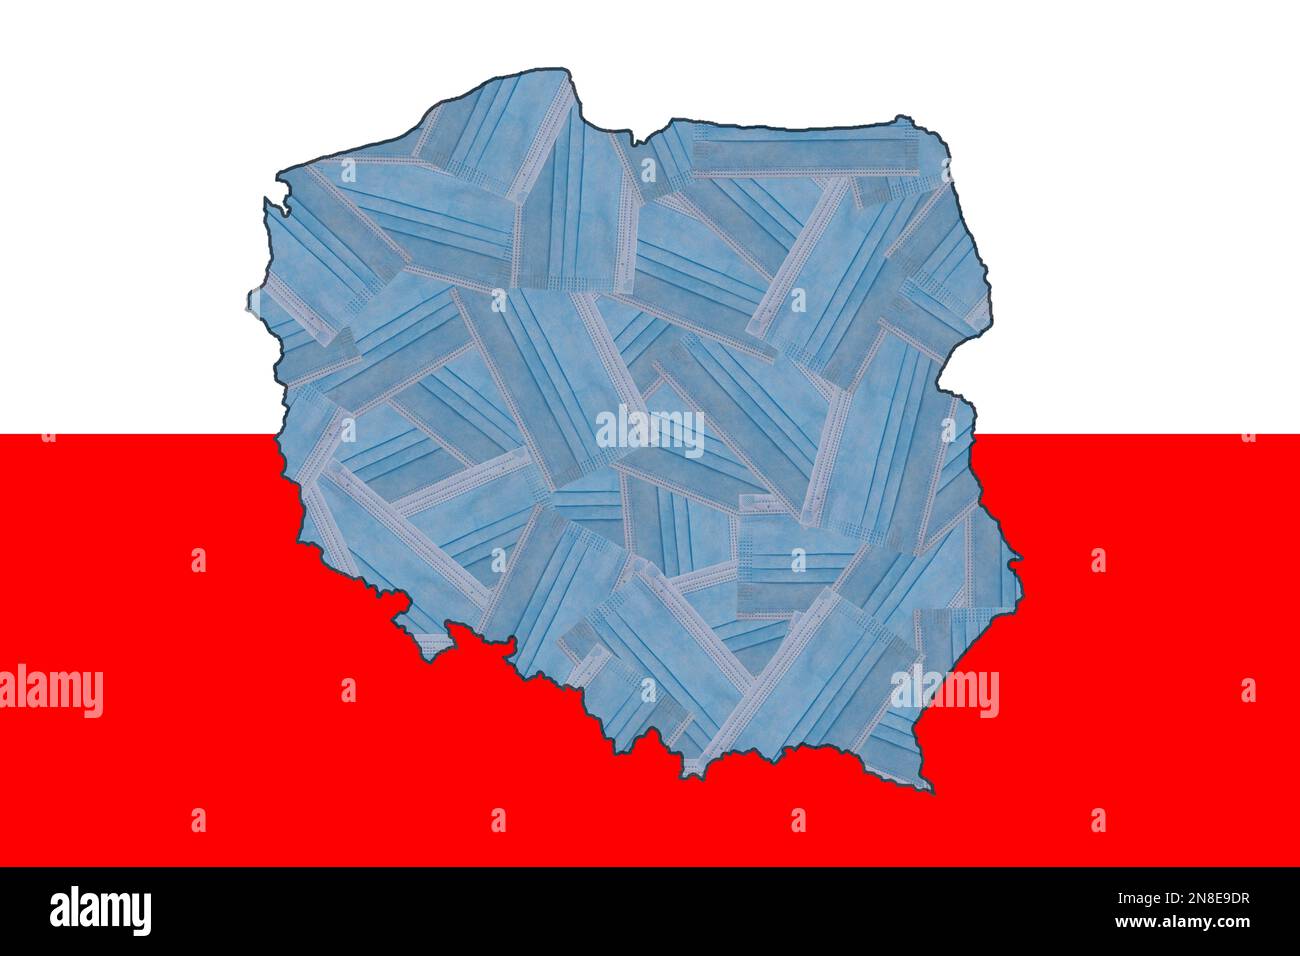 Masques médicaux bleus sous la forme d'une carte géographique de la Pologne sur fond de drapeau national de la Pologne. Pandémie. Quarantaine. Zéro Covid Banque D'Images